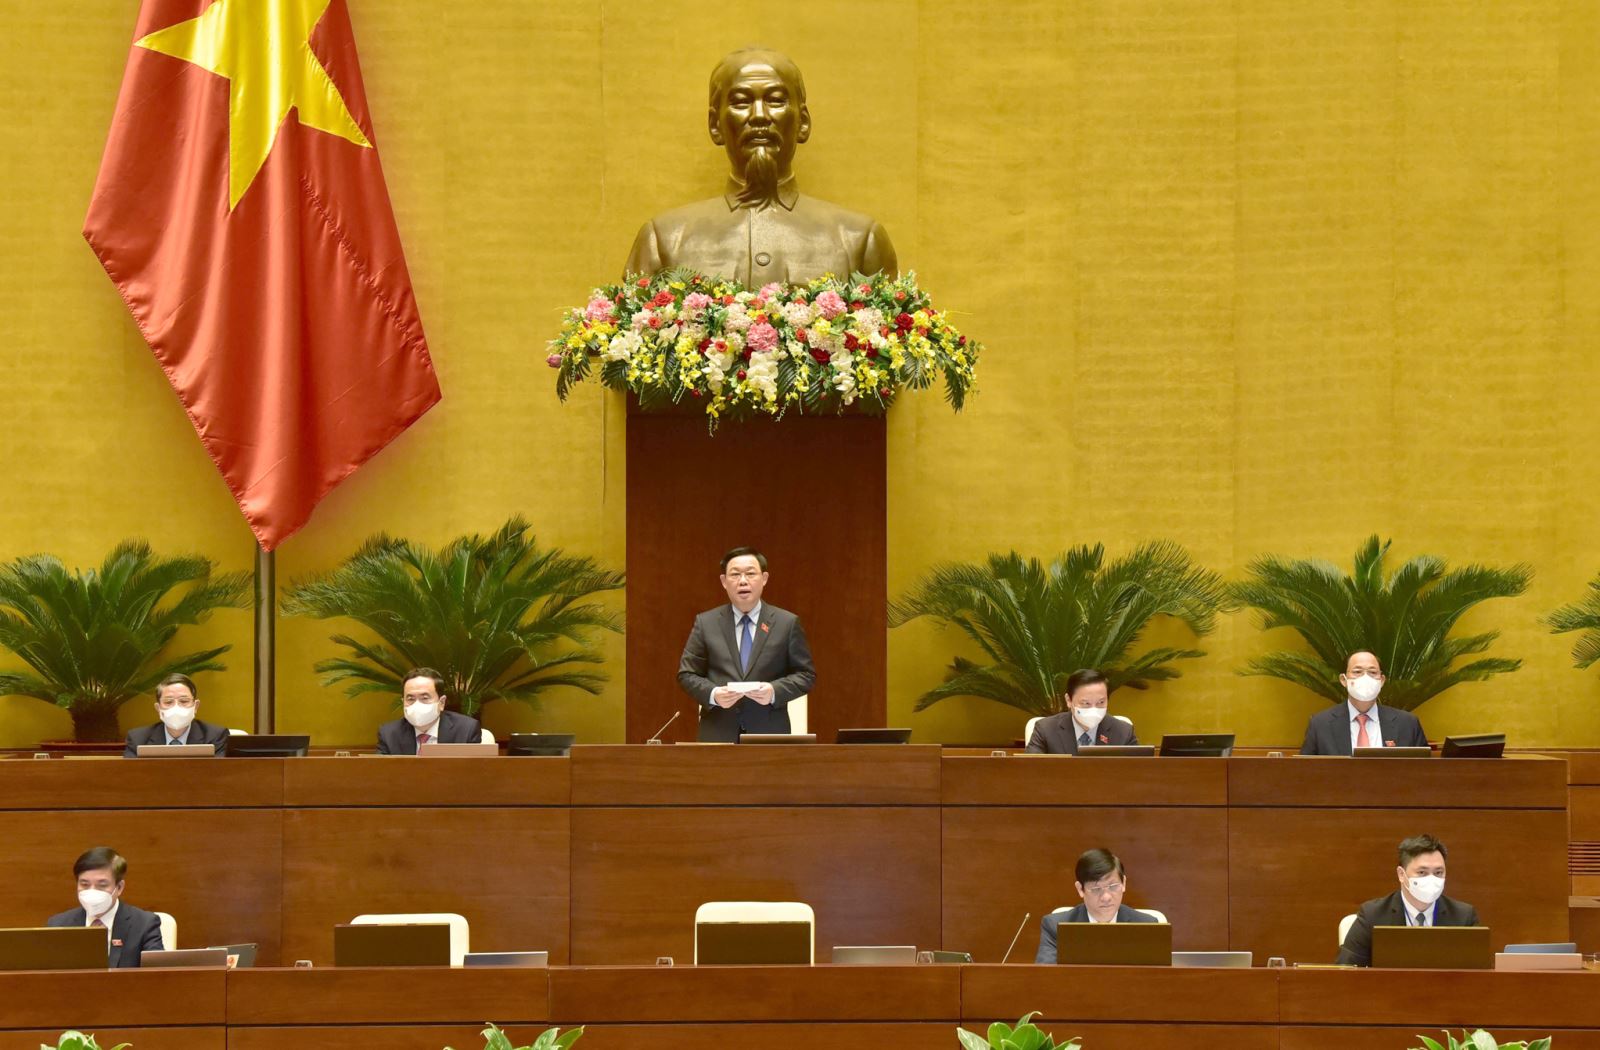 TRỰC TIẾP: Quốc hội chất vấn Bộ trưởng Bộ Y tế Nguyễn Thanh Long